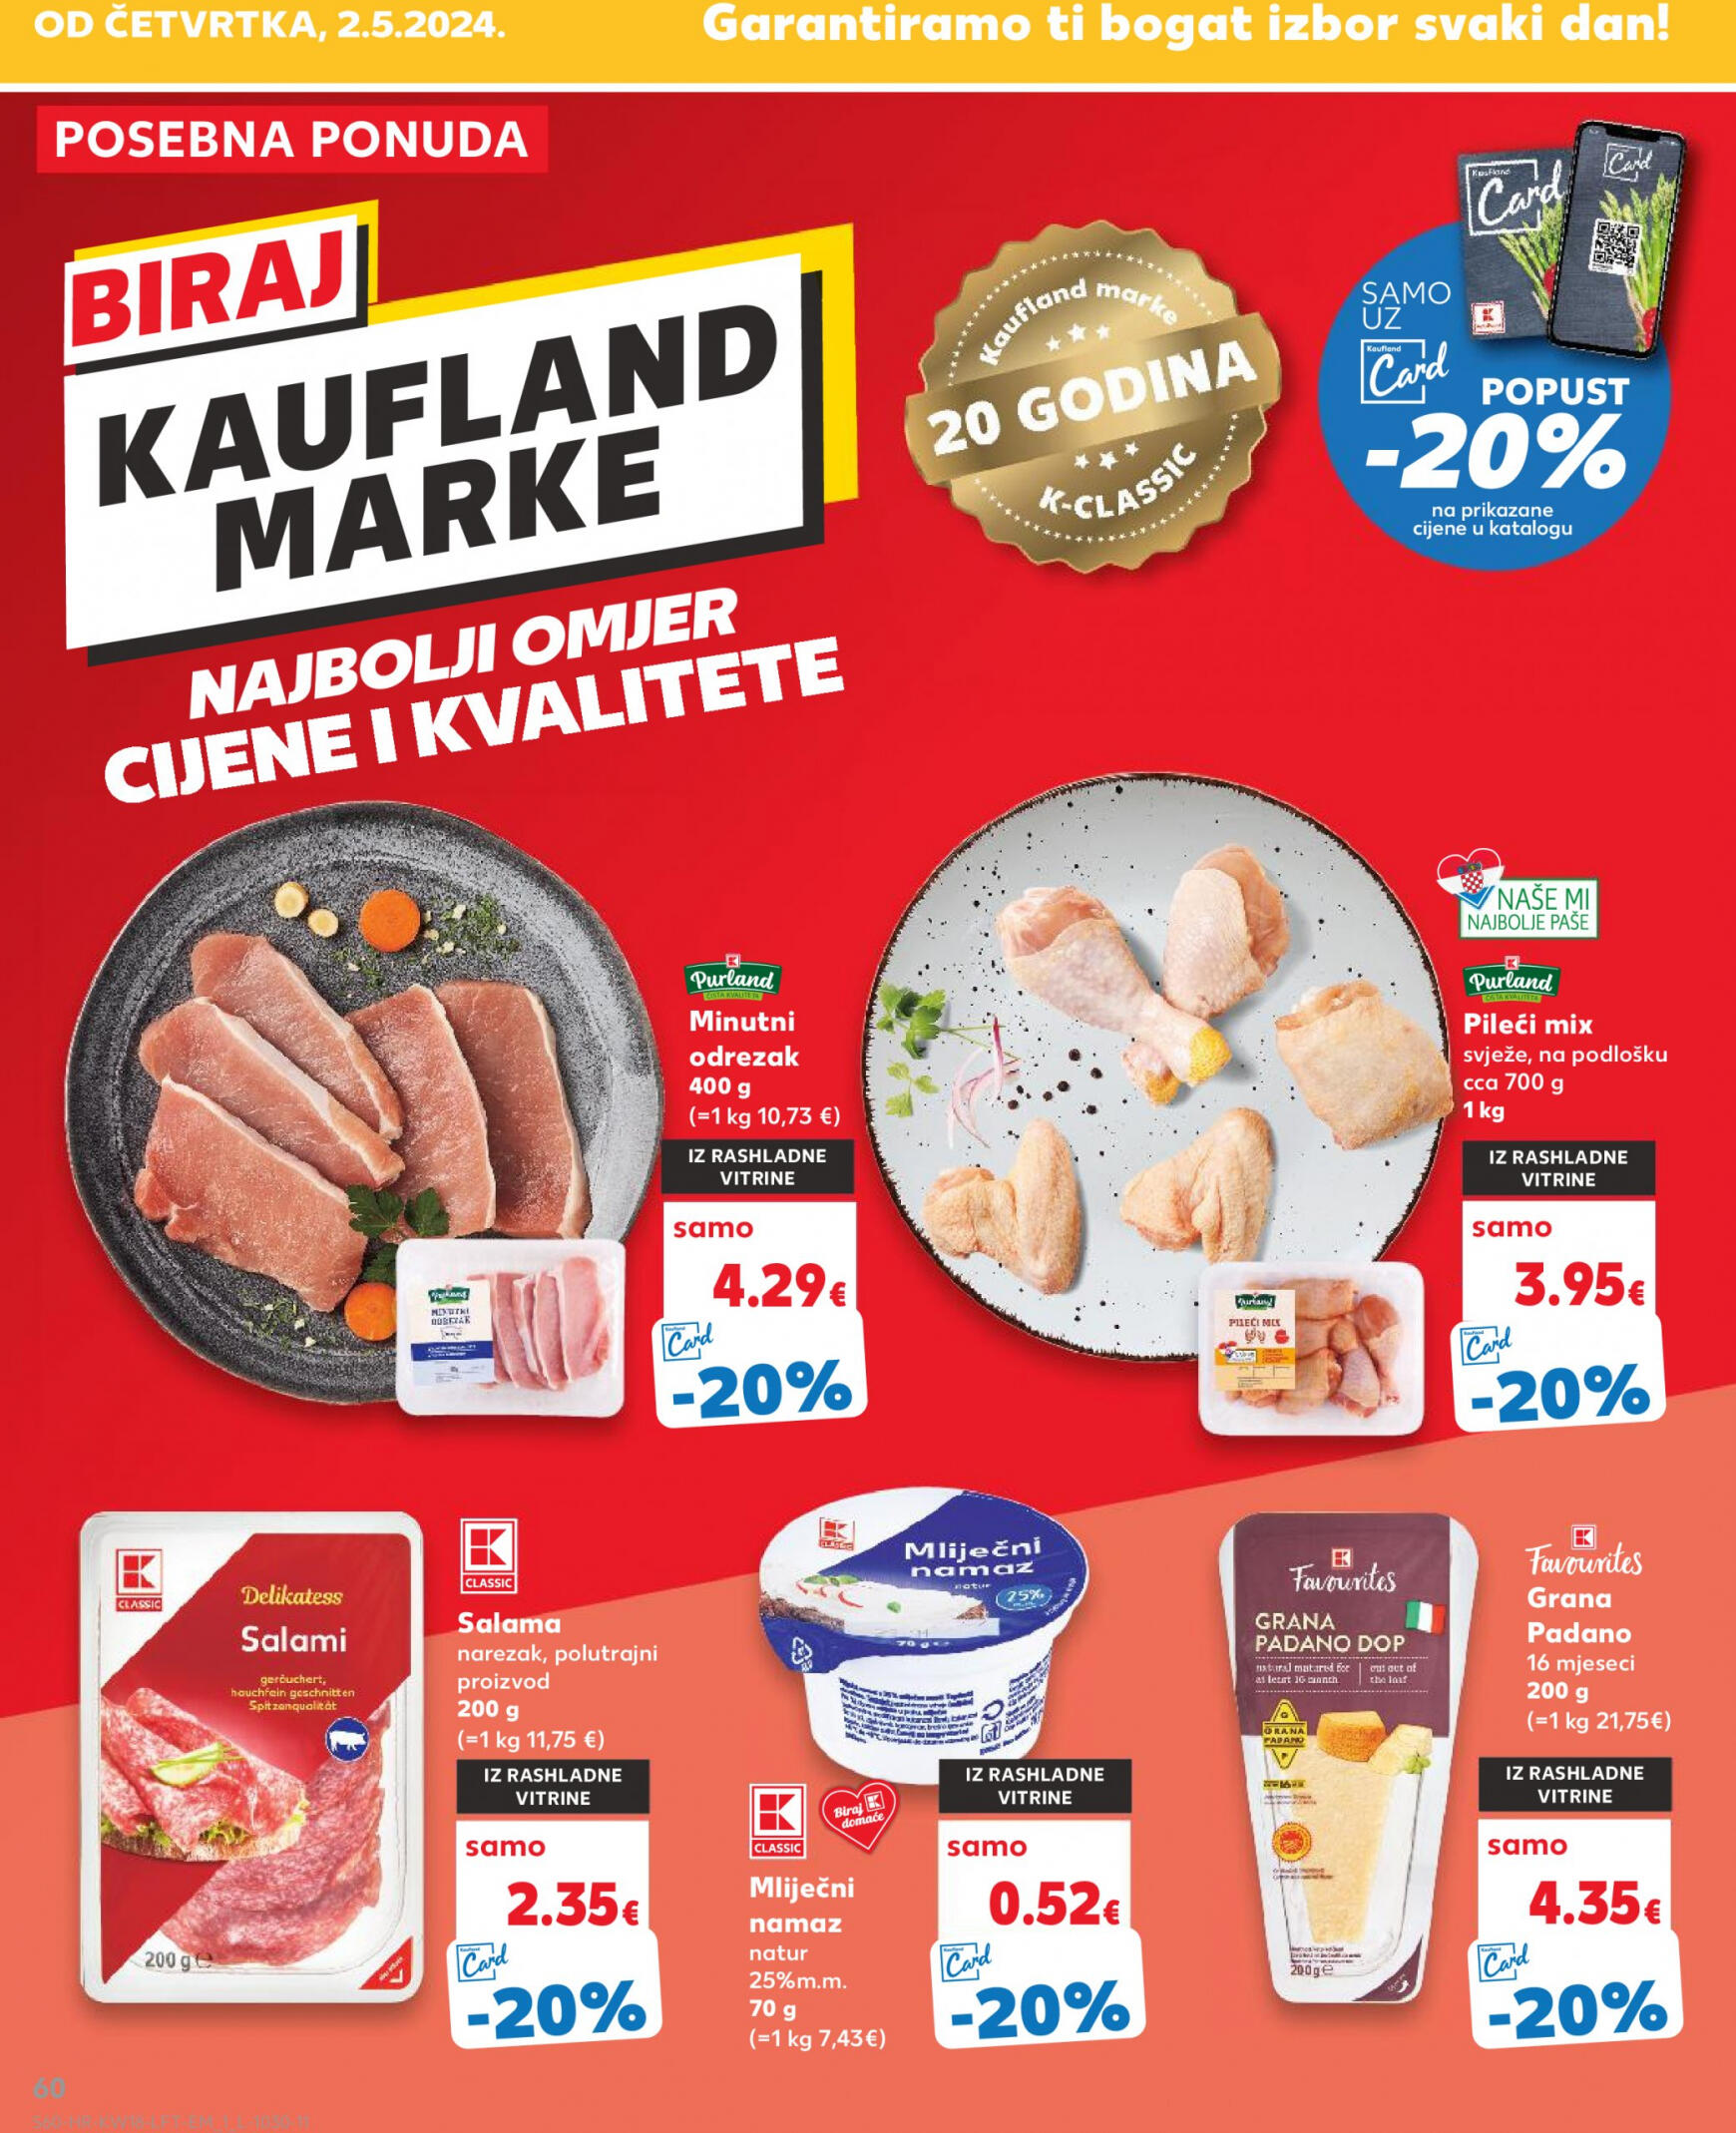 kaufland - Novi katalog Kaufland 02.05. - 07.05. - page: 60